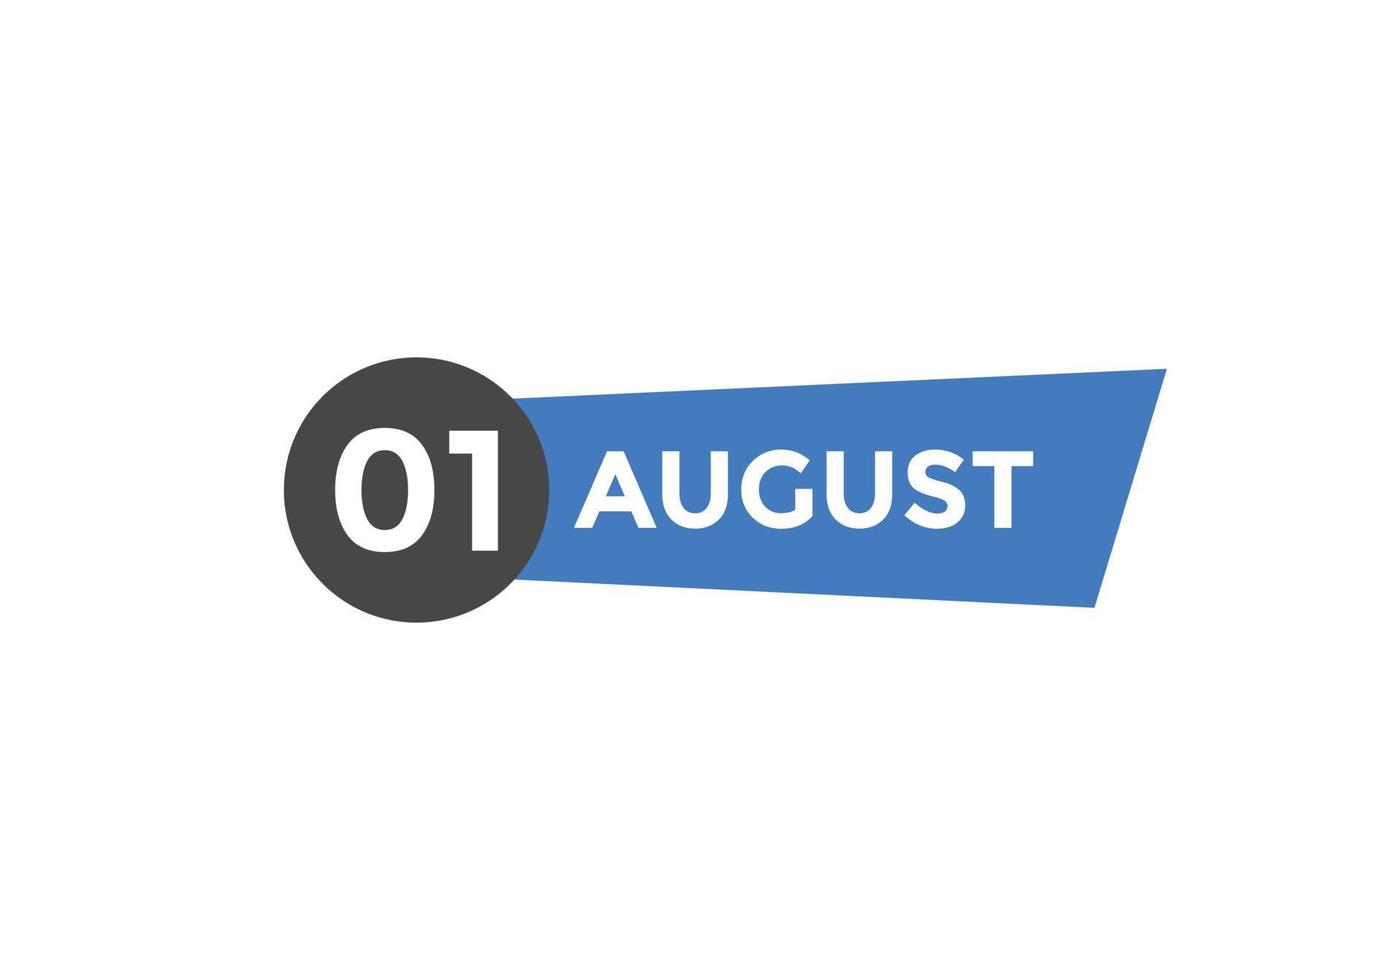 Recordatorio del calendario del 1 de agosto. Plantilla de icono de calendario diario del 1 de agosto. plantilla de diseño de icono de calendario 1 de agosto. ilustración vectorial vector